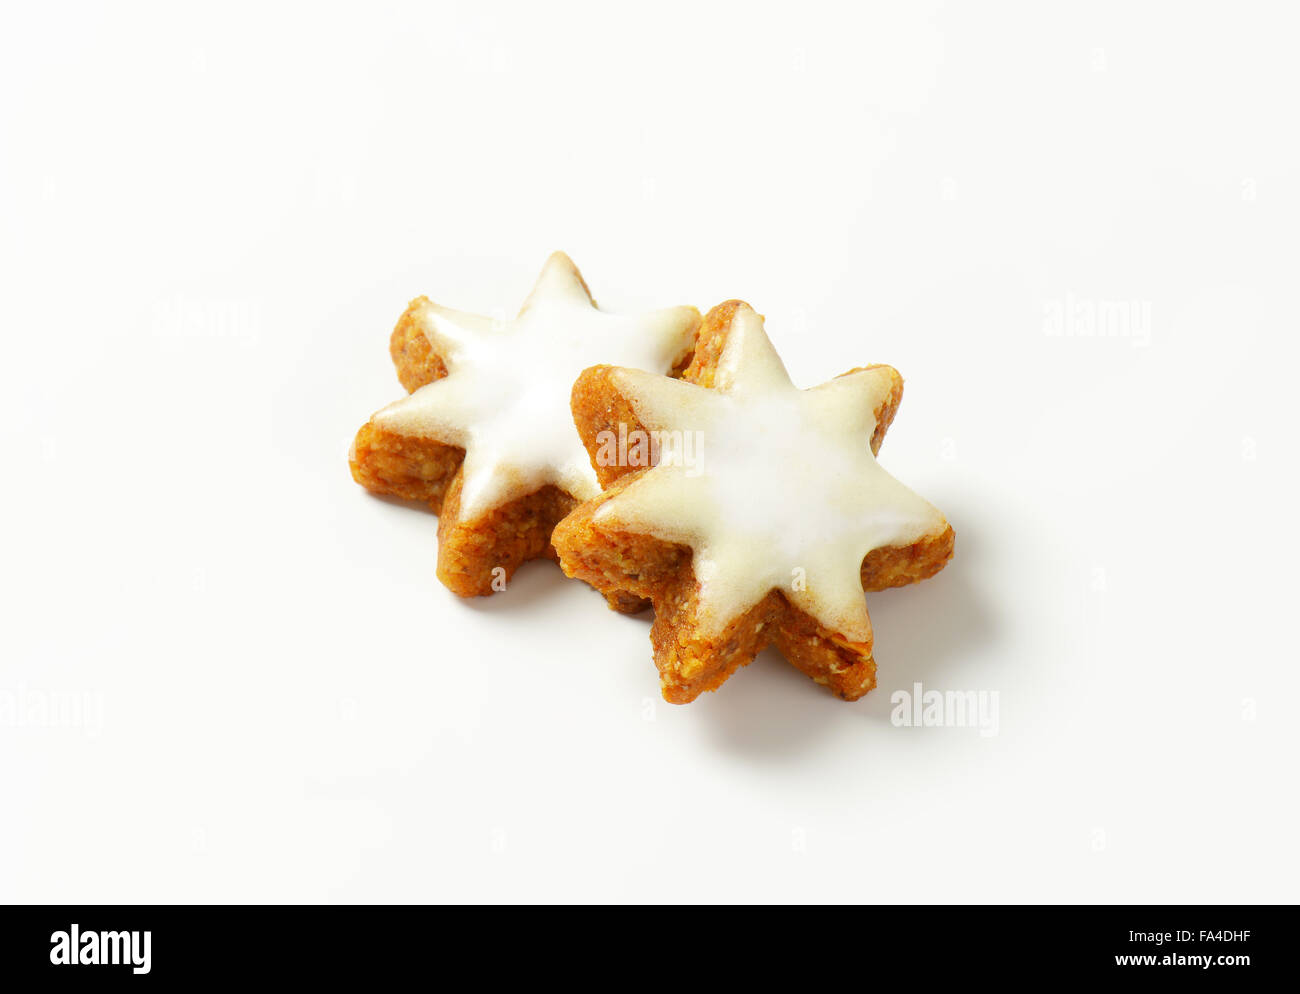 Biscotti Di Natale Zimtsterne.Zimtsterne Cannella Stelle Tedesco Tradizionali Biscotti Di Natale Foto Stock Alamy